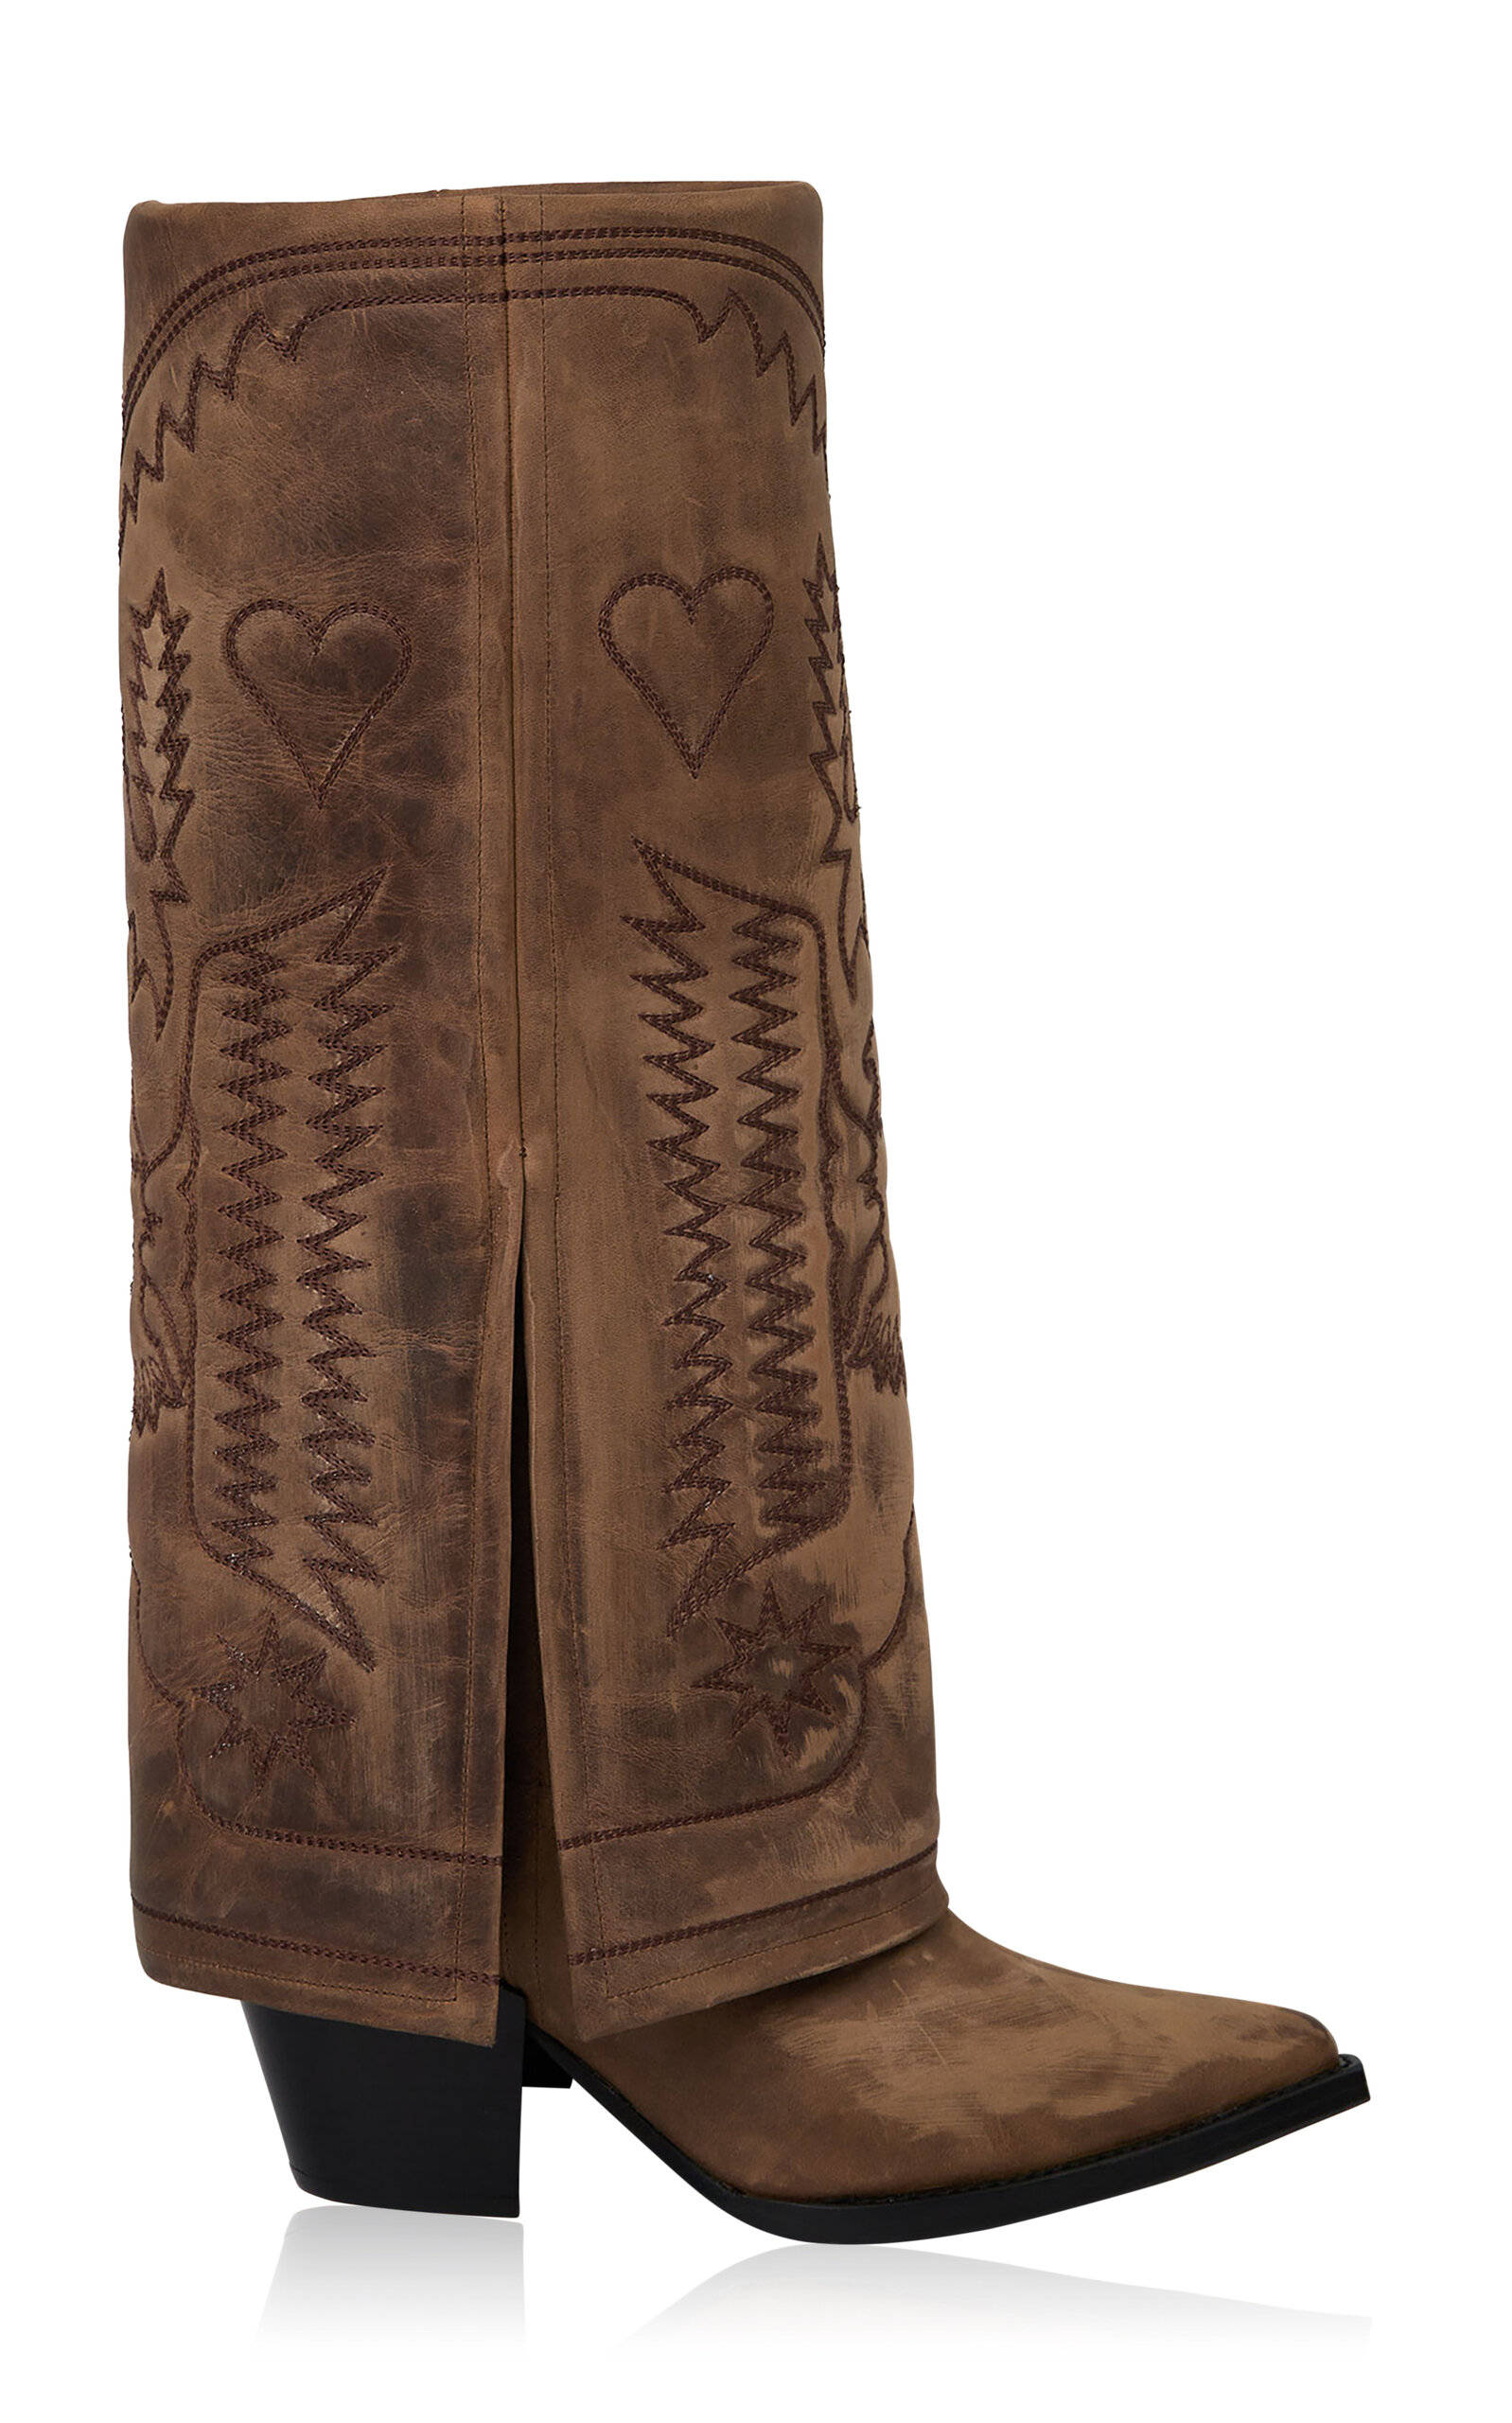 FILLES Ã PAPA Dallas Fold Over Embroidered Vintage-Effect Suede High Western Boots